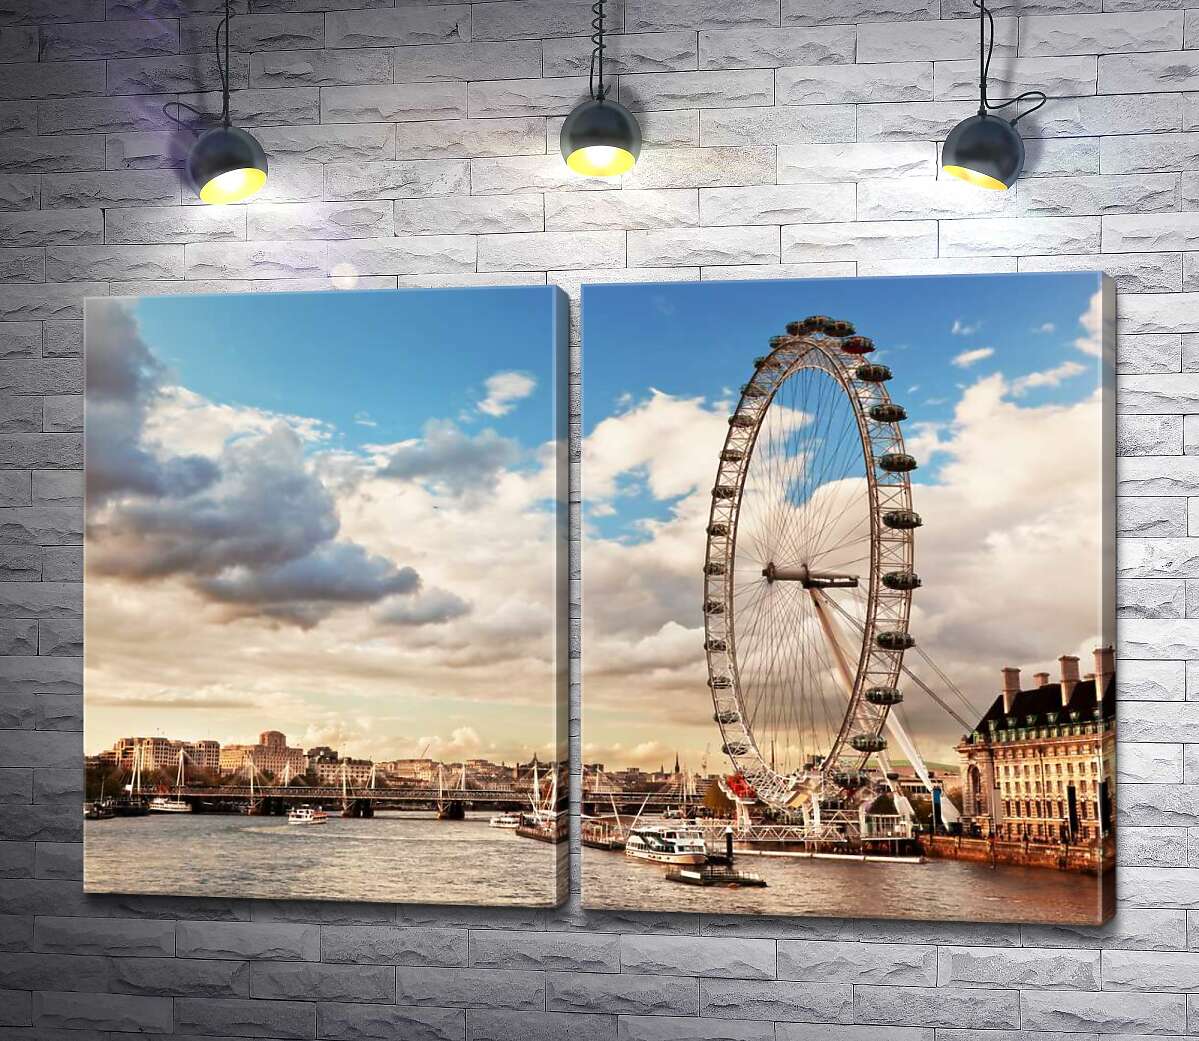 модульная картина Колесо обозрения "Лондонский глаз" (London eye) нависло над водами Темзы